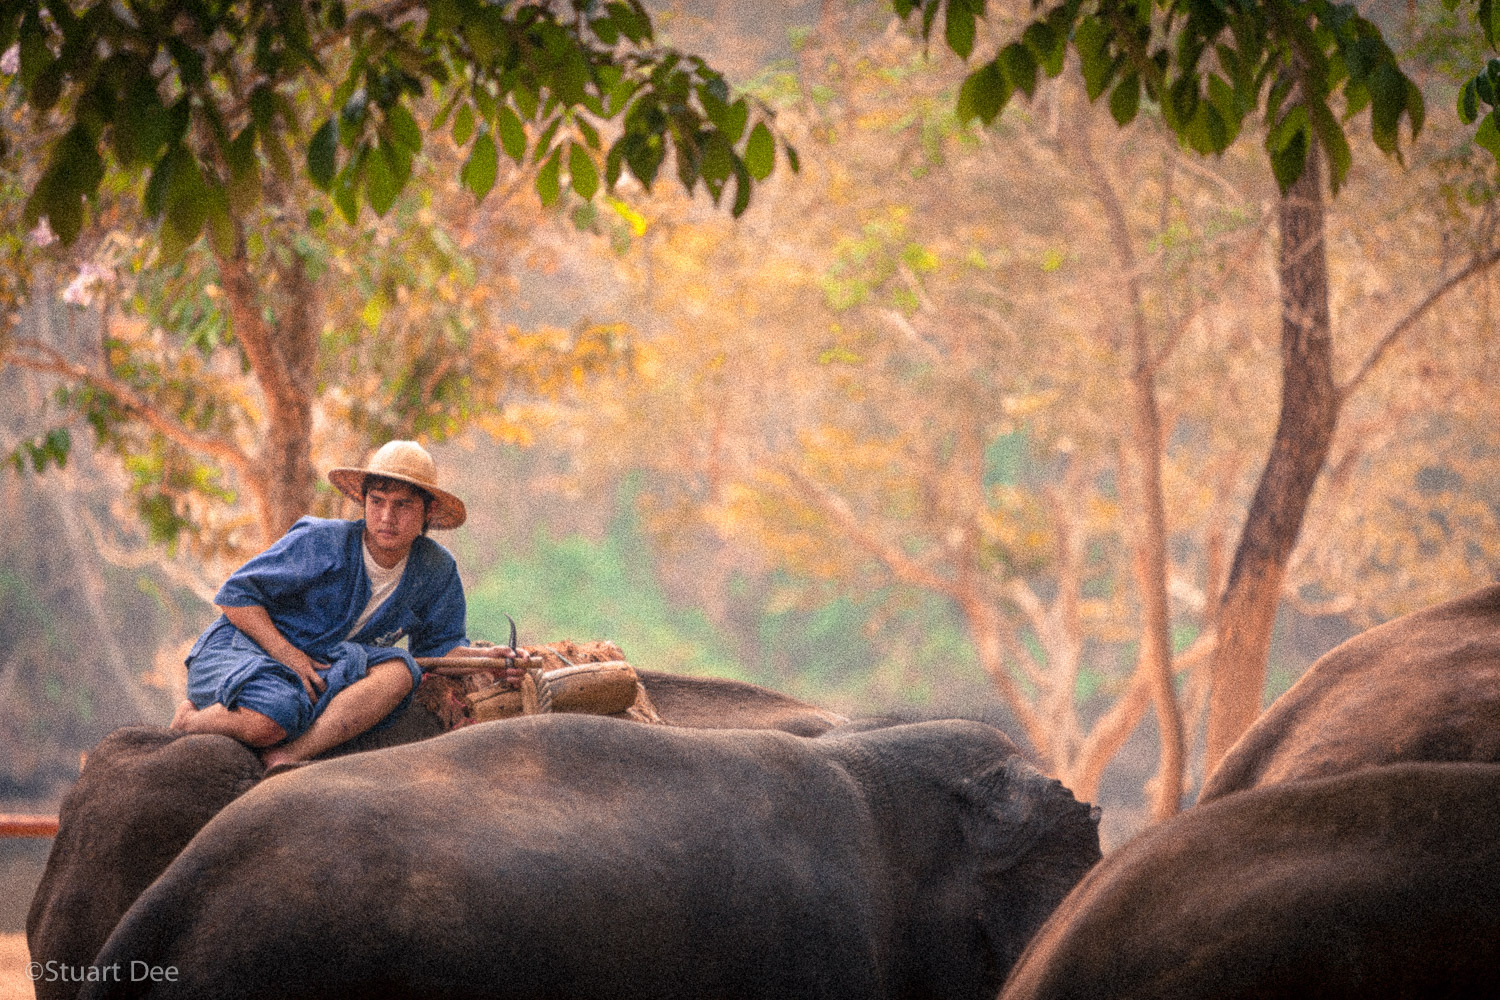  Mahout on elephant, Lampang, Thailand 